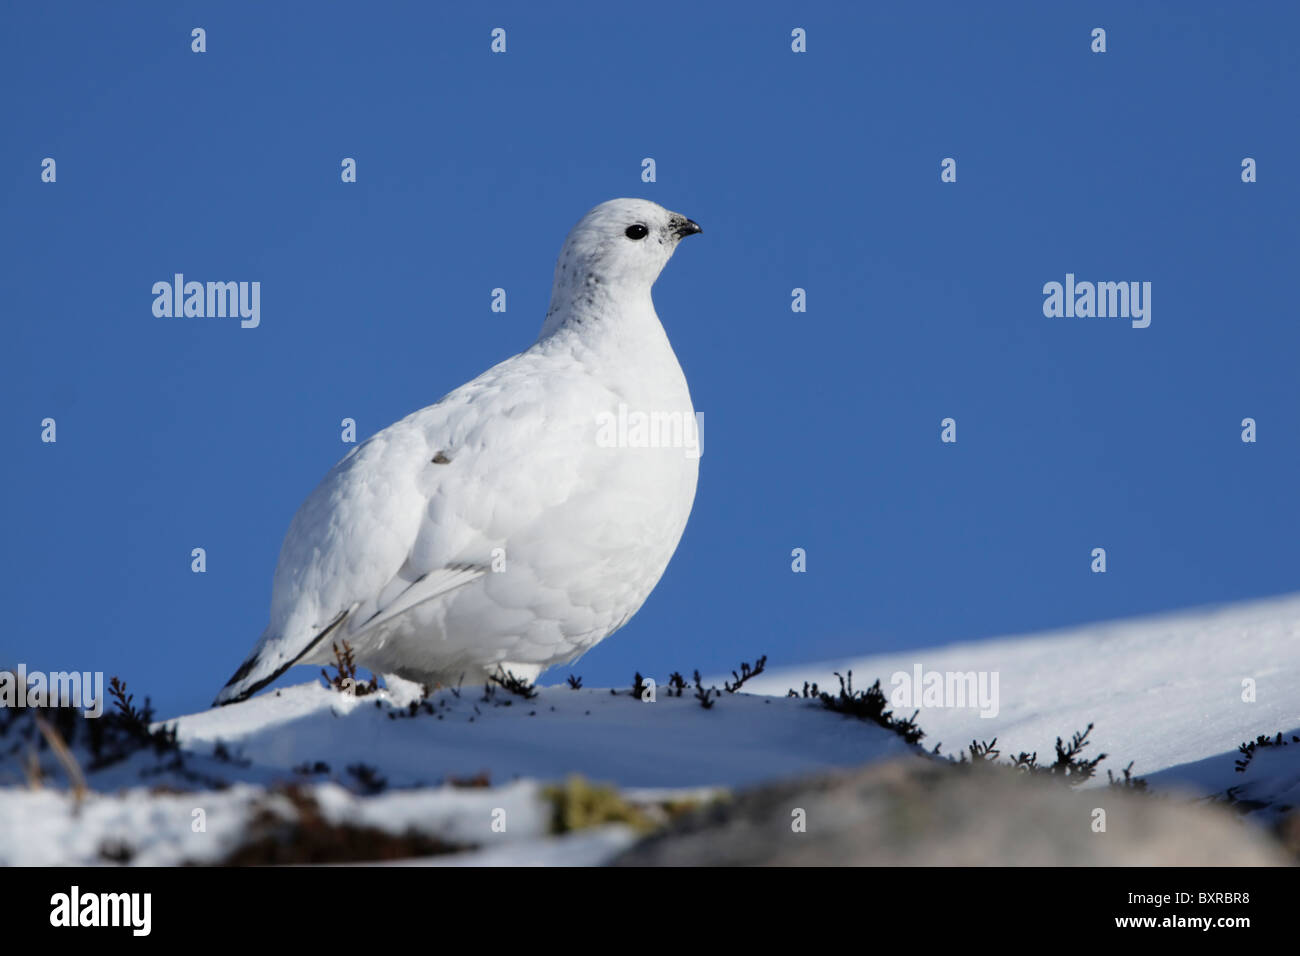 Femme Lagoups rock ptarmigan (muta) montrant le plumage d'hiver debout sur neige avec ciel bleu clair derrière Banque D'Images